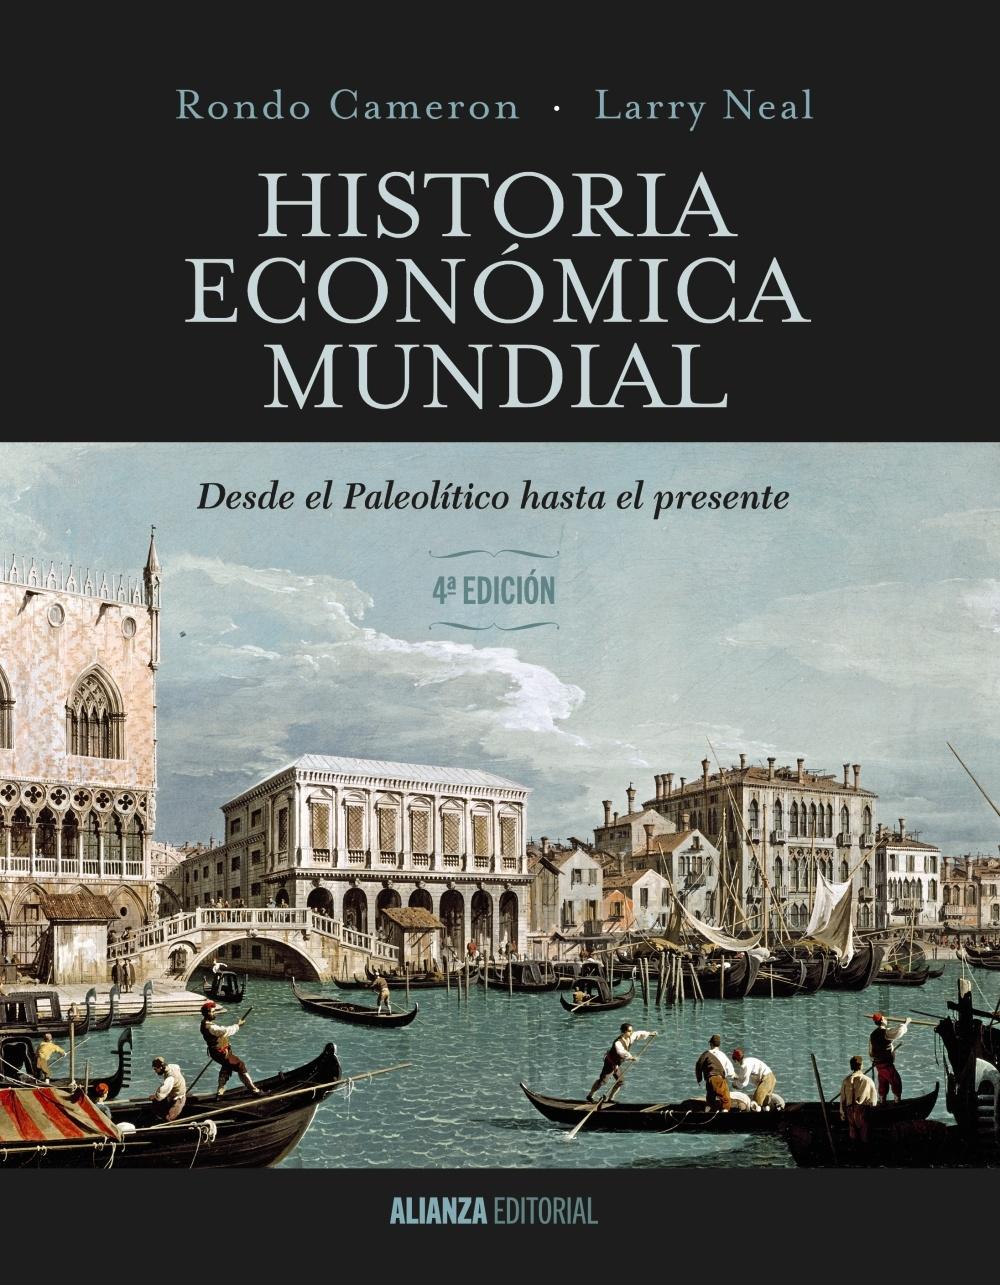 HISTORIA ECONÓMICA MUNDIAL "DESDE EL PALEOLÍTICO HASTA EL PRESENTE. 4ª EDICIÓN"